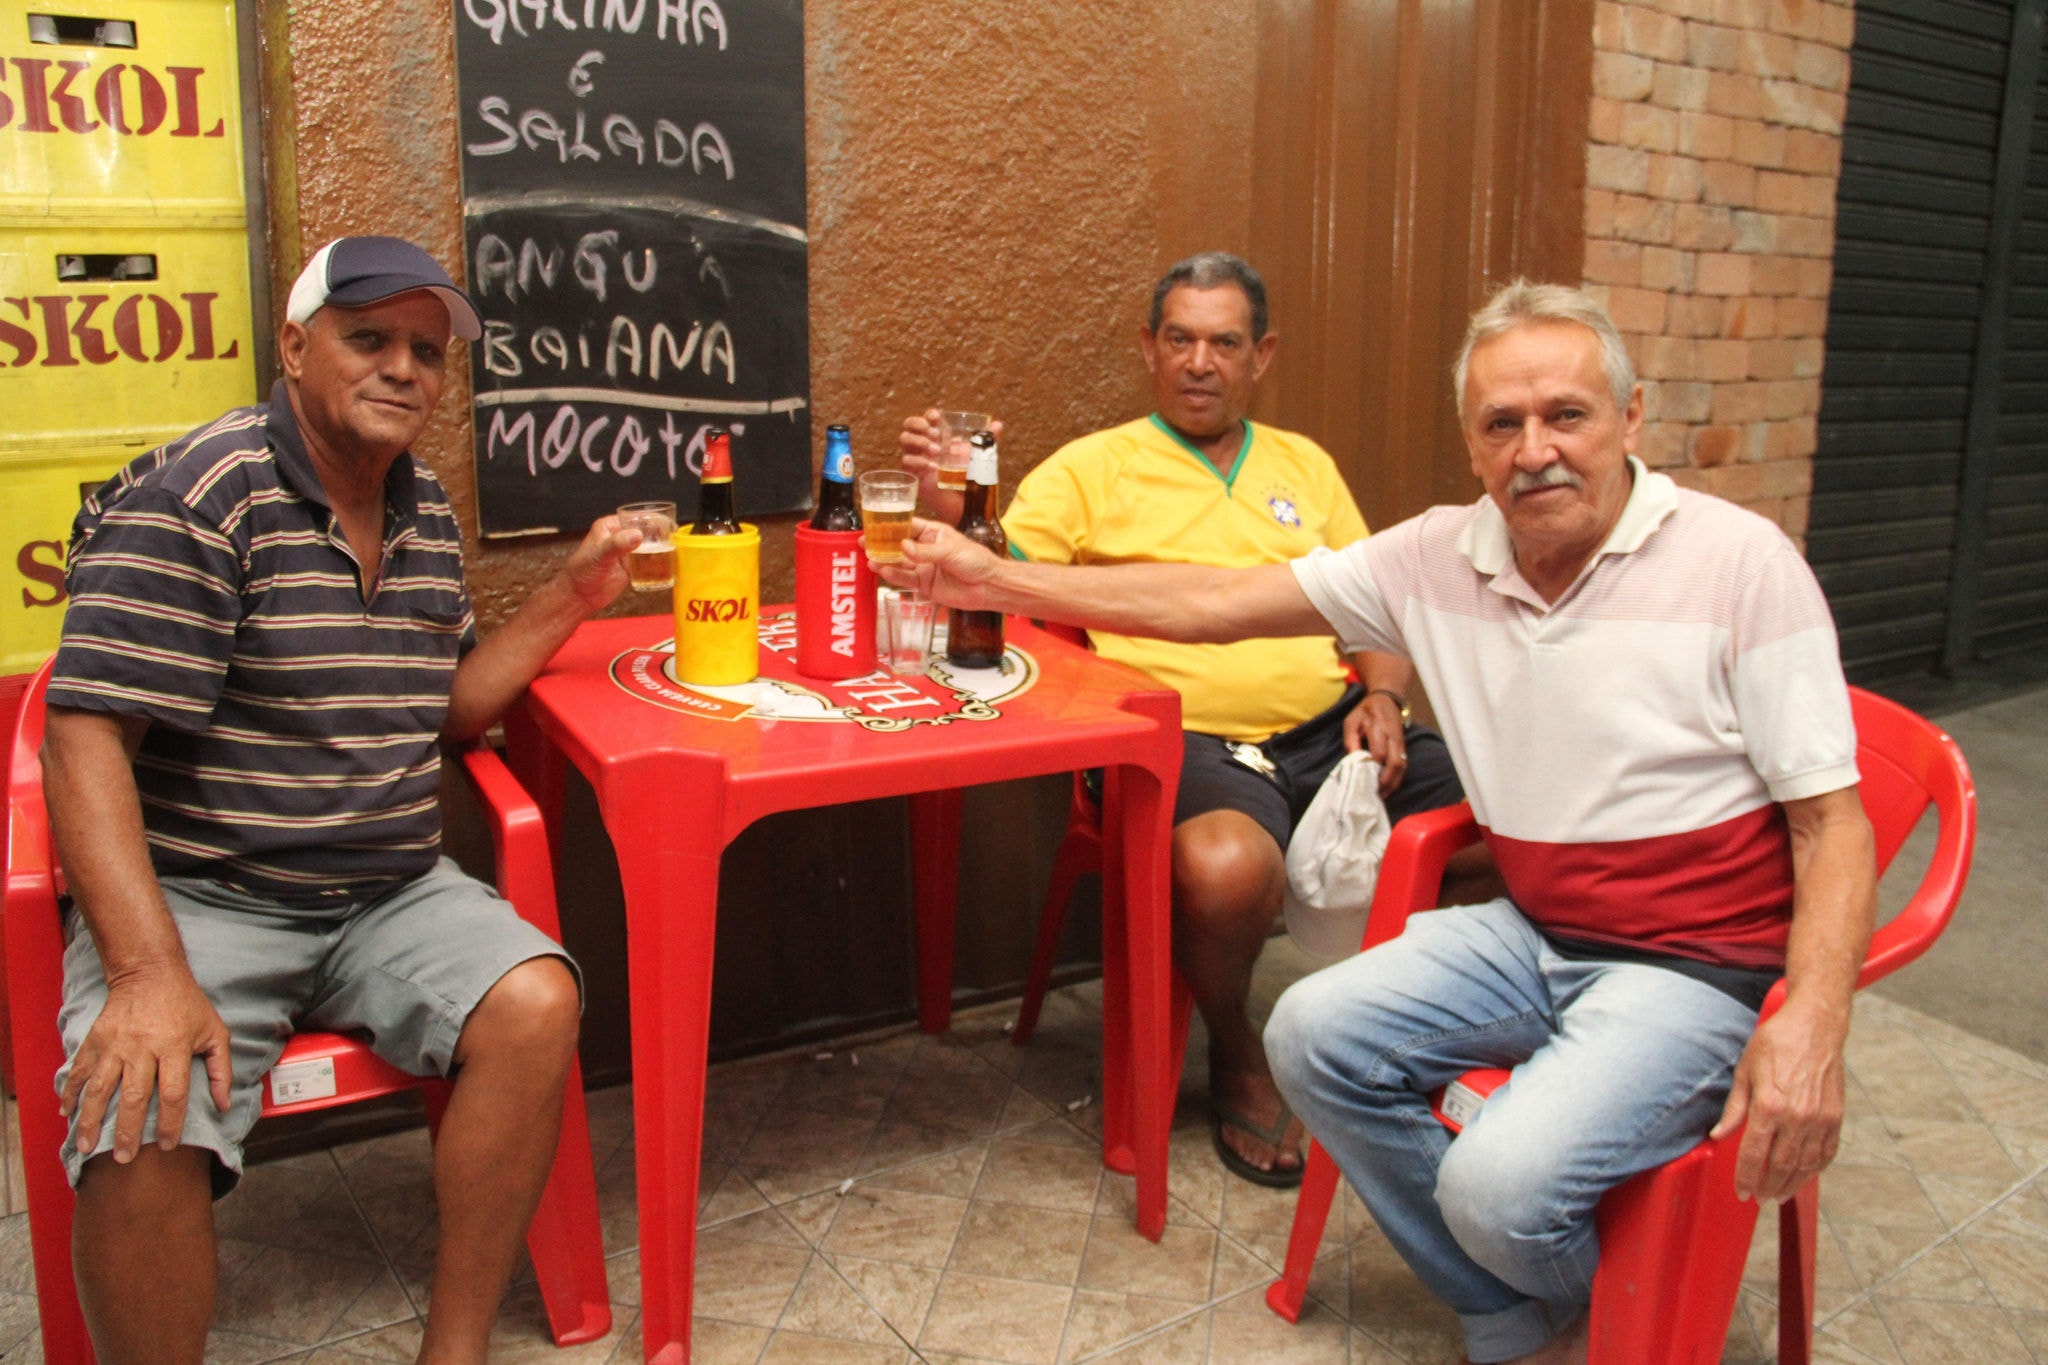 Silvio Loureiro, José Júlio Pereira e Adelmo Vieira reclamam dos preços mais caros no bar, especialmente das porções